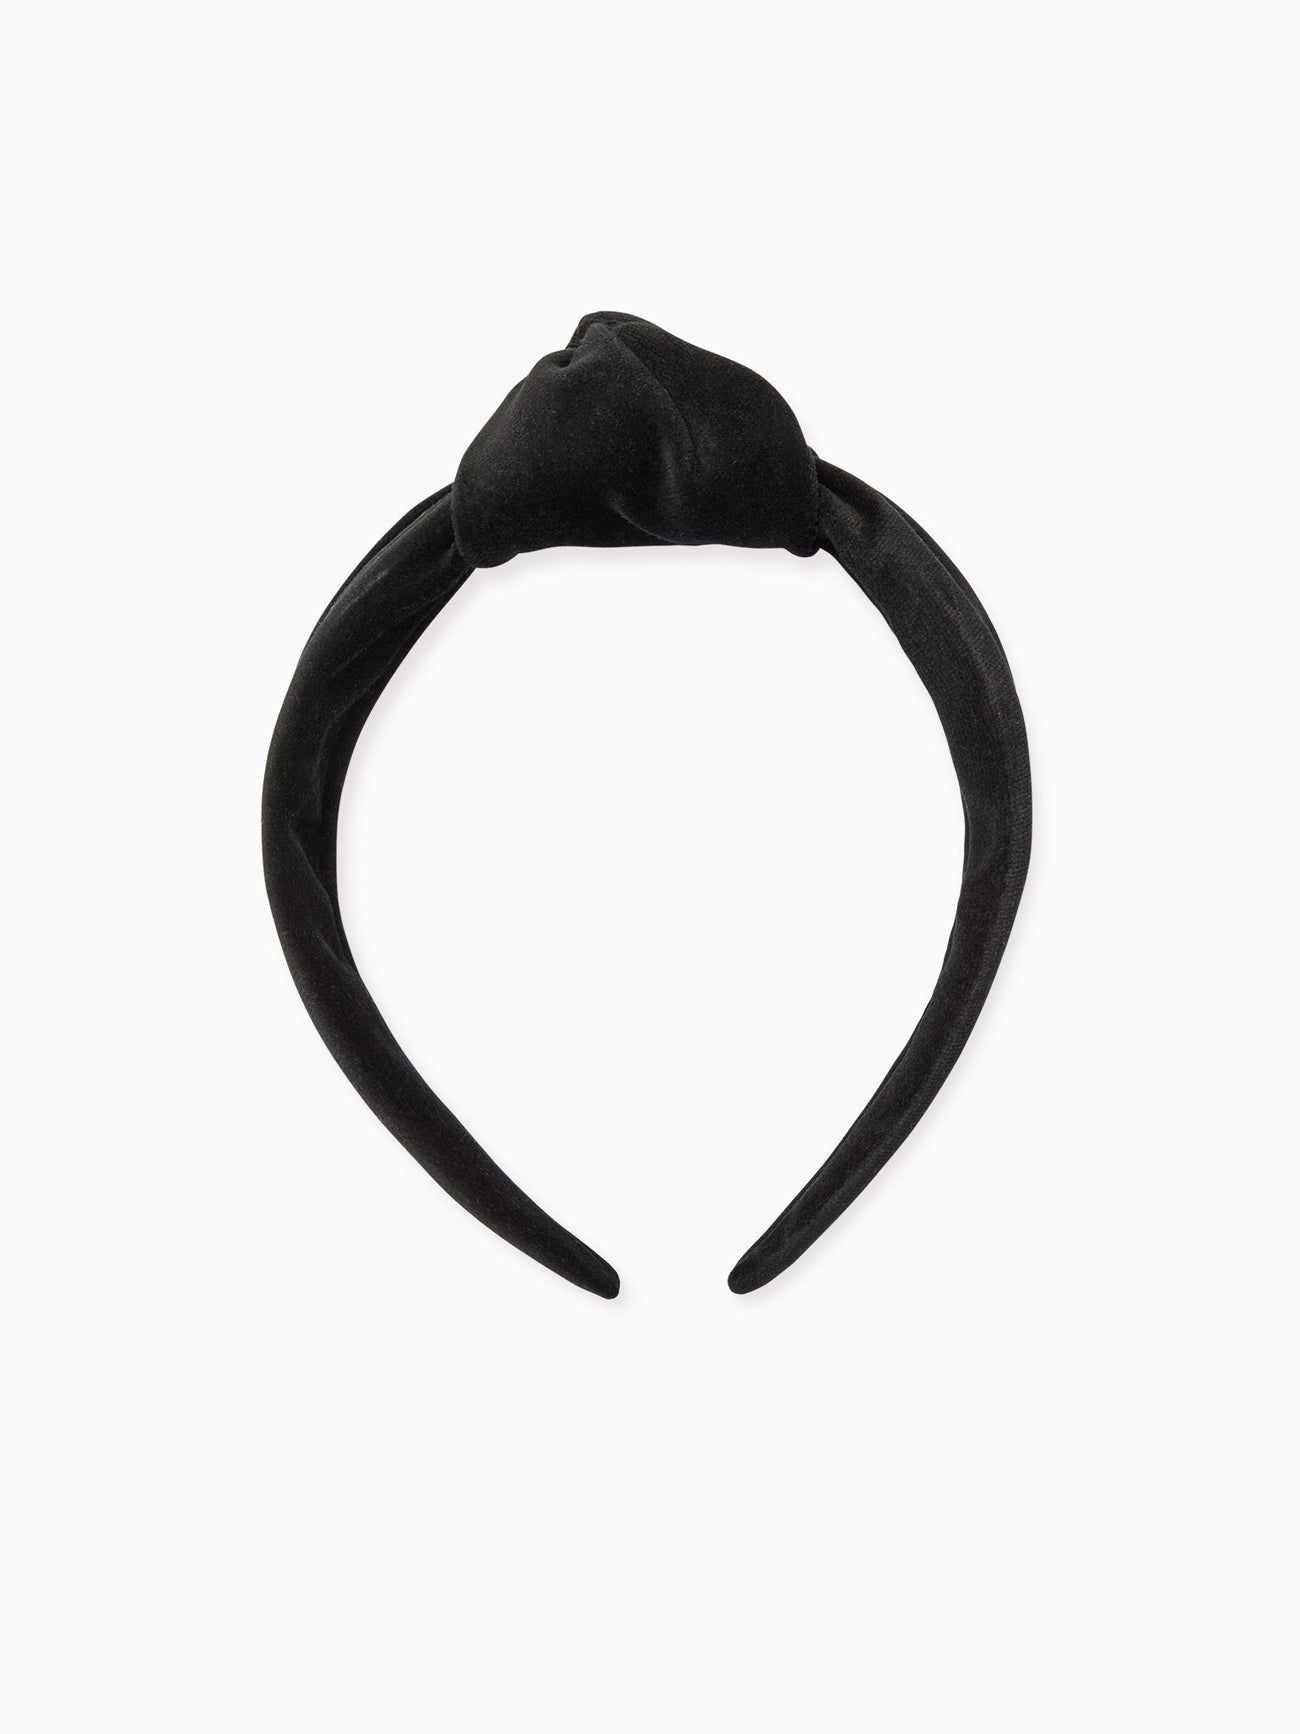 Black Velvet Girl Top Knot Hairband